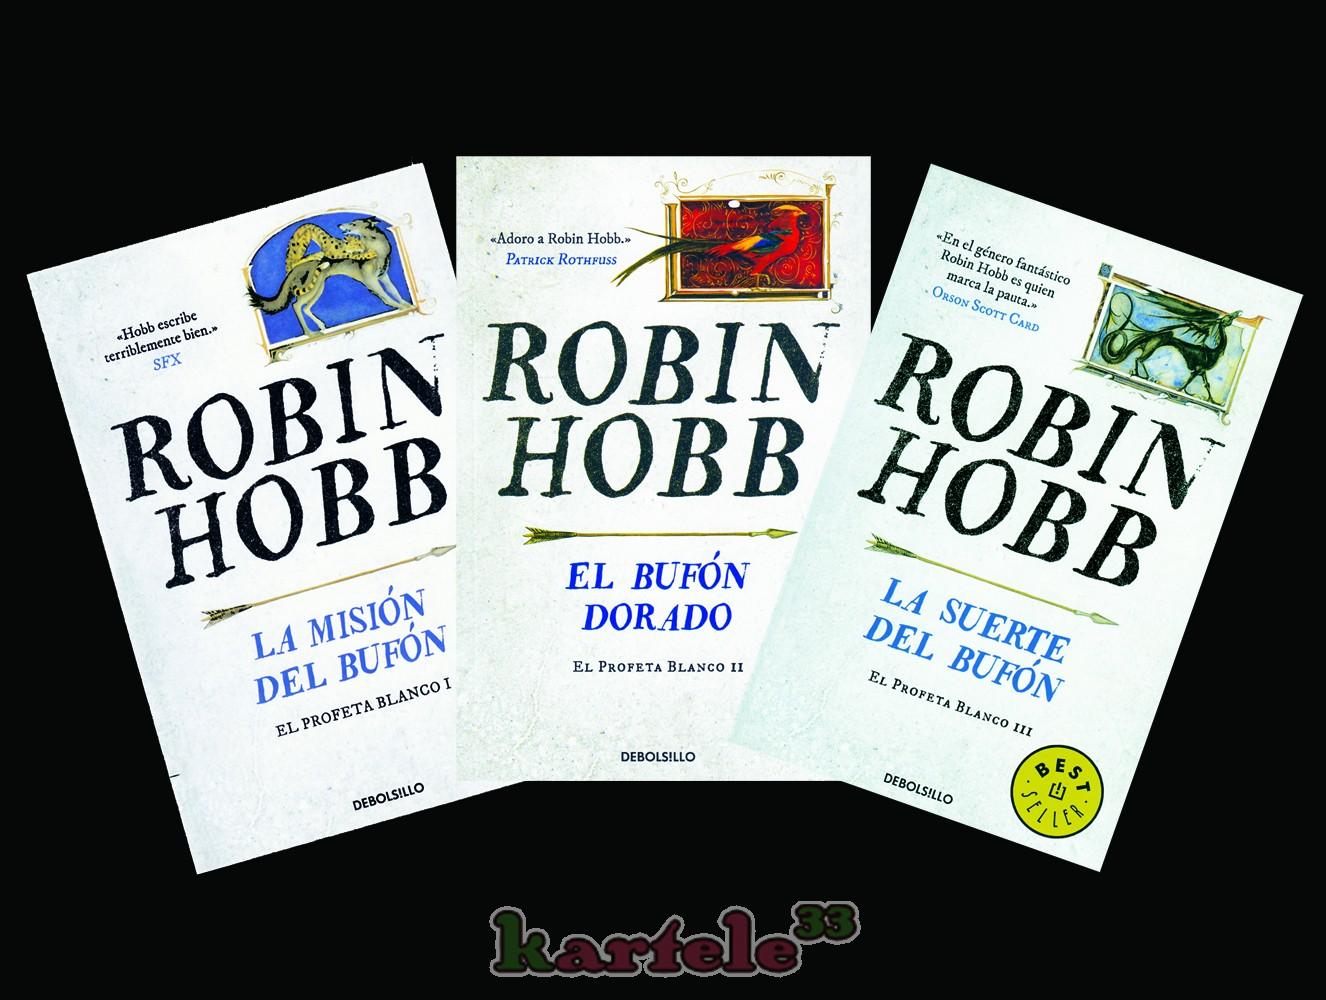 ROBIN HOBB: VATÍDICO, LEYES DEL MAR, EL PROFETA BLANCO